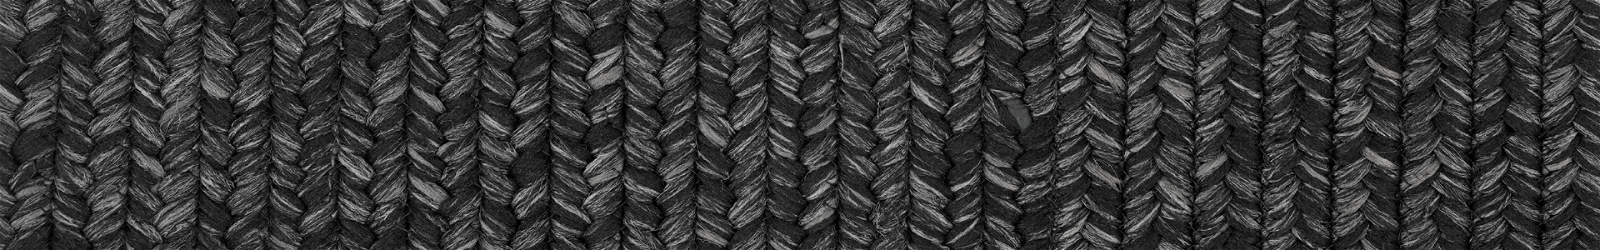 Jute - Black Braided Rugs